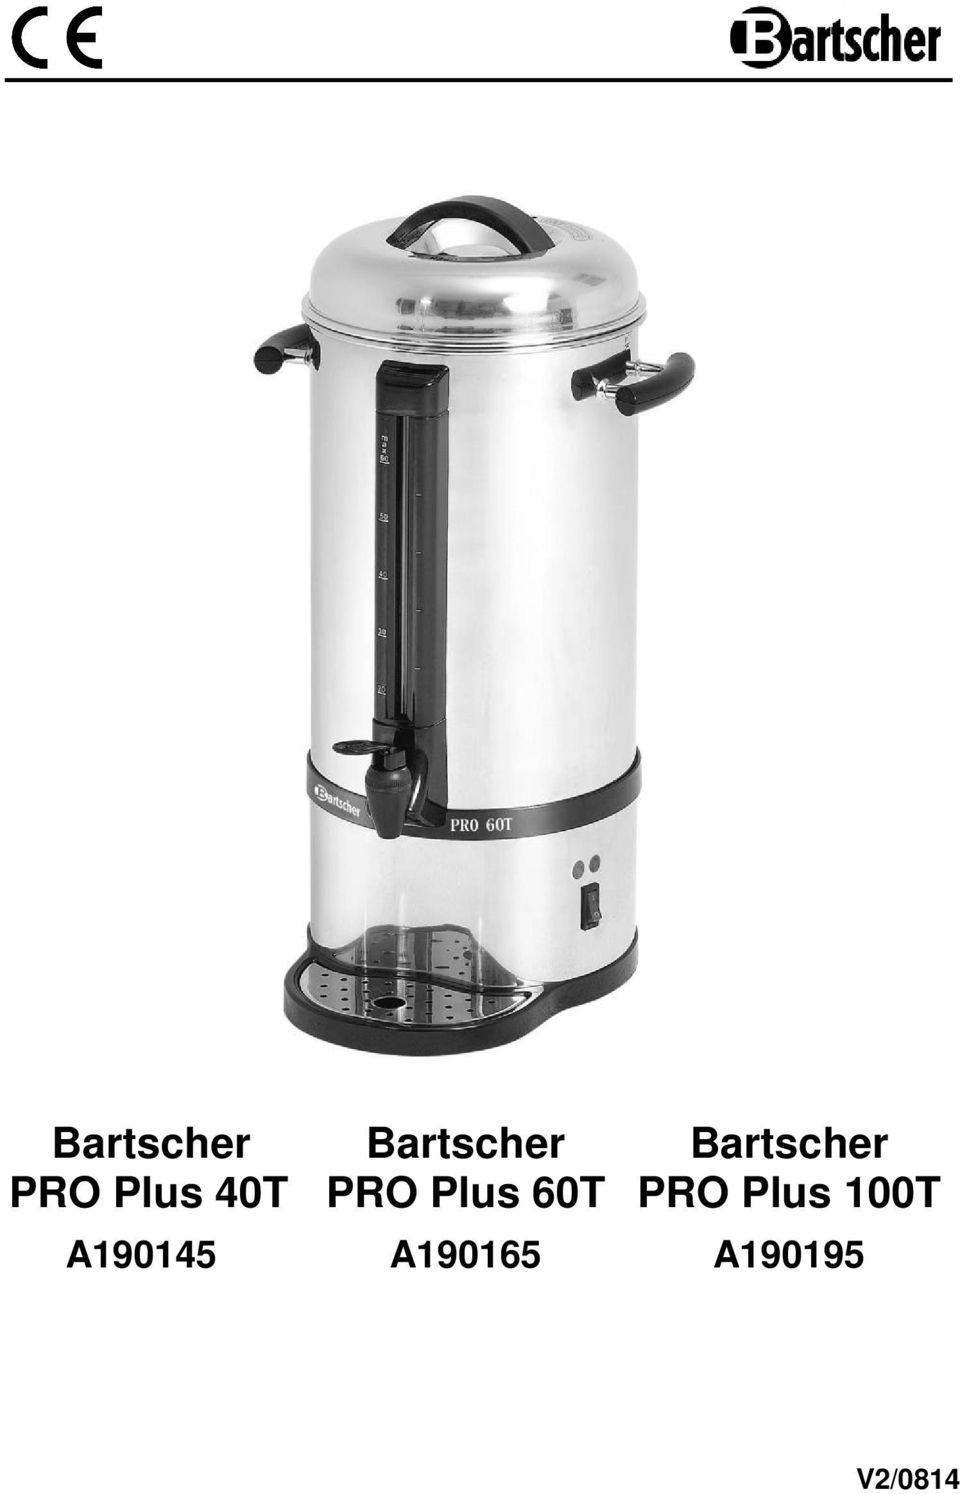 Bartscher PRO Plus 100T